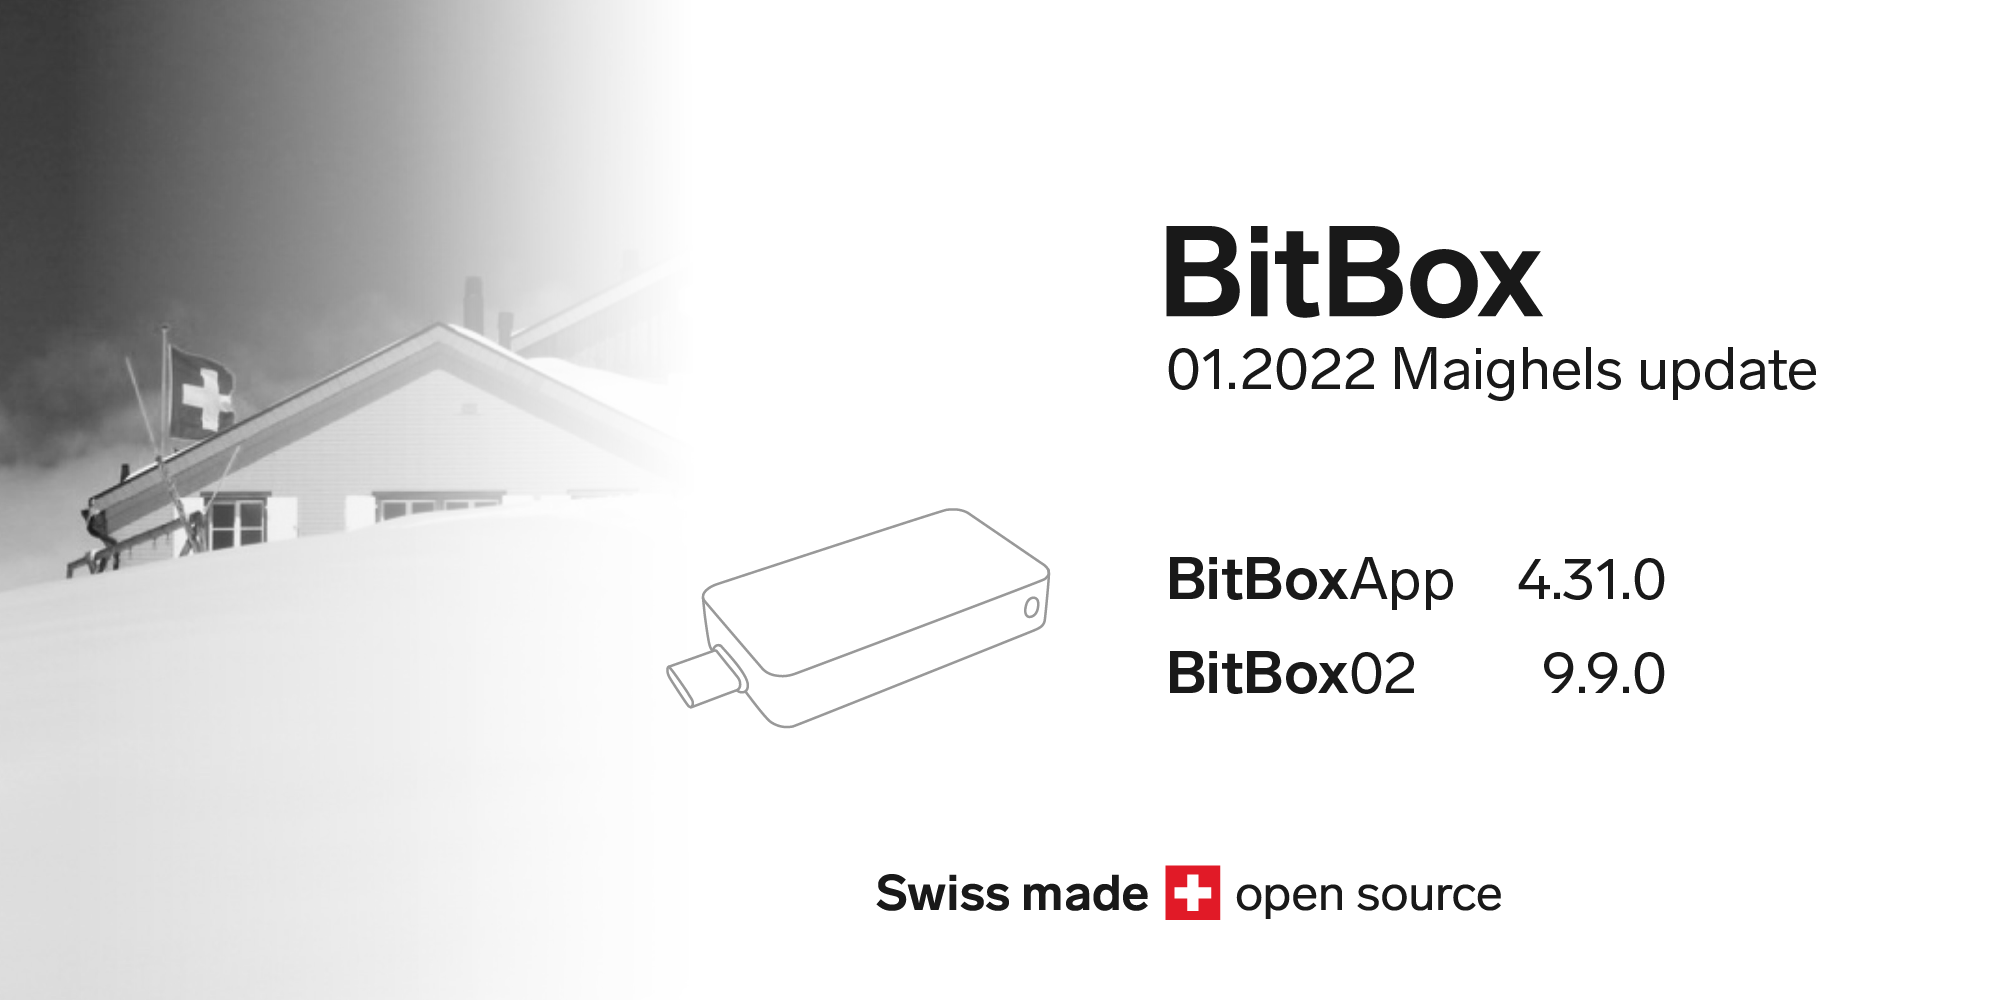 BitBox 01.2022 Maighels update